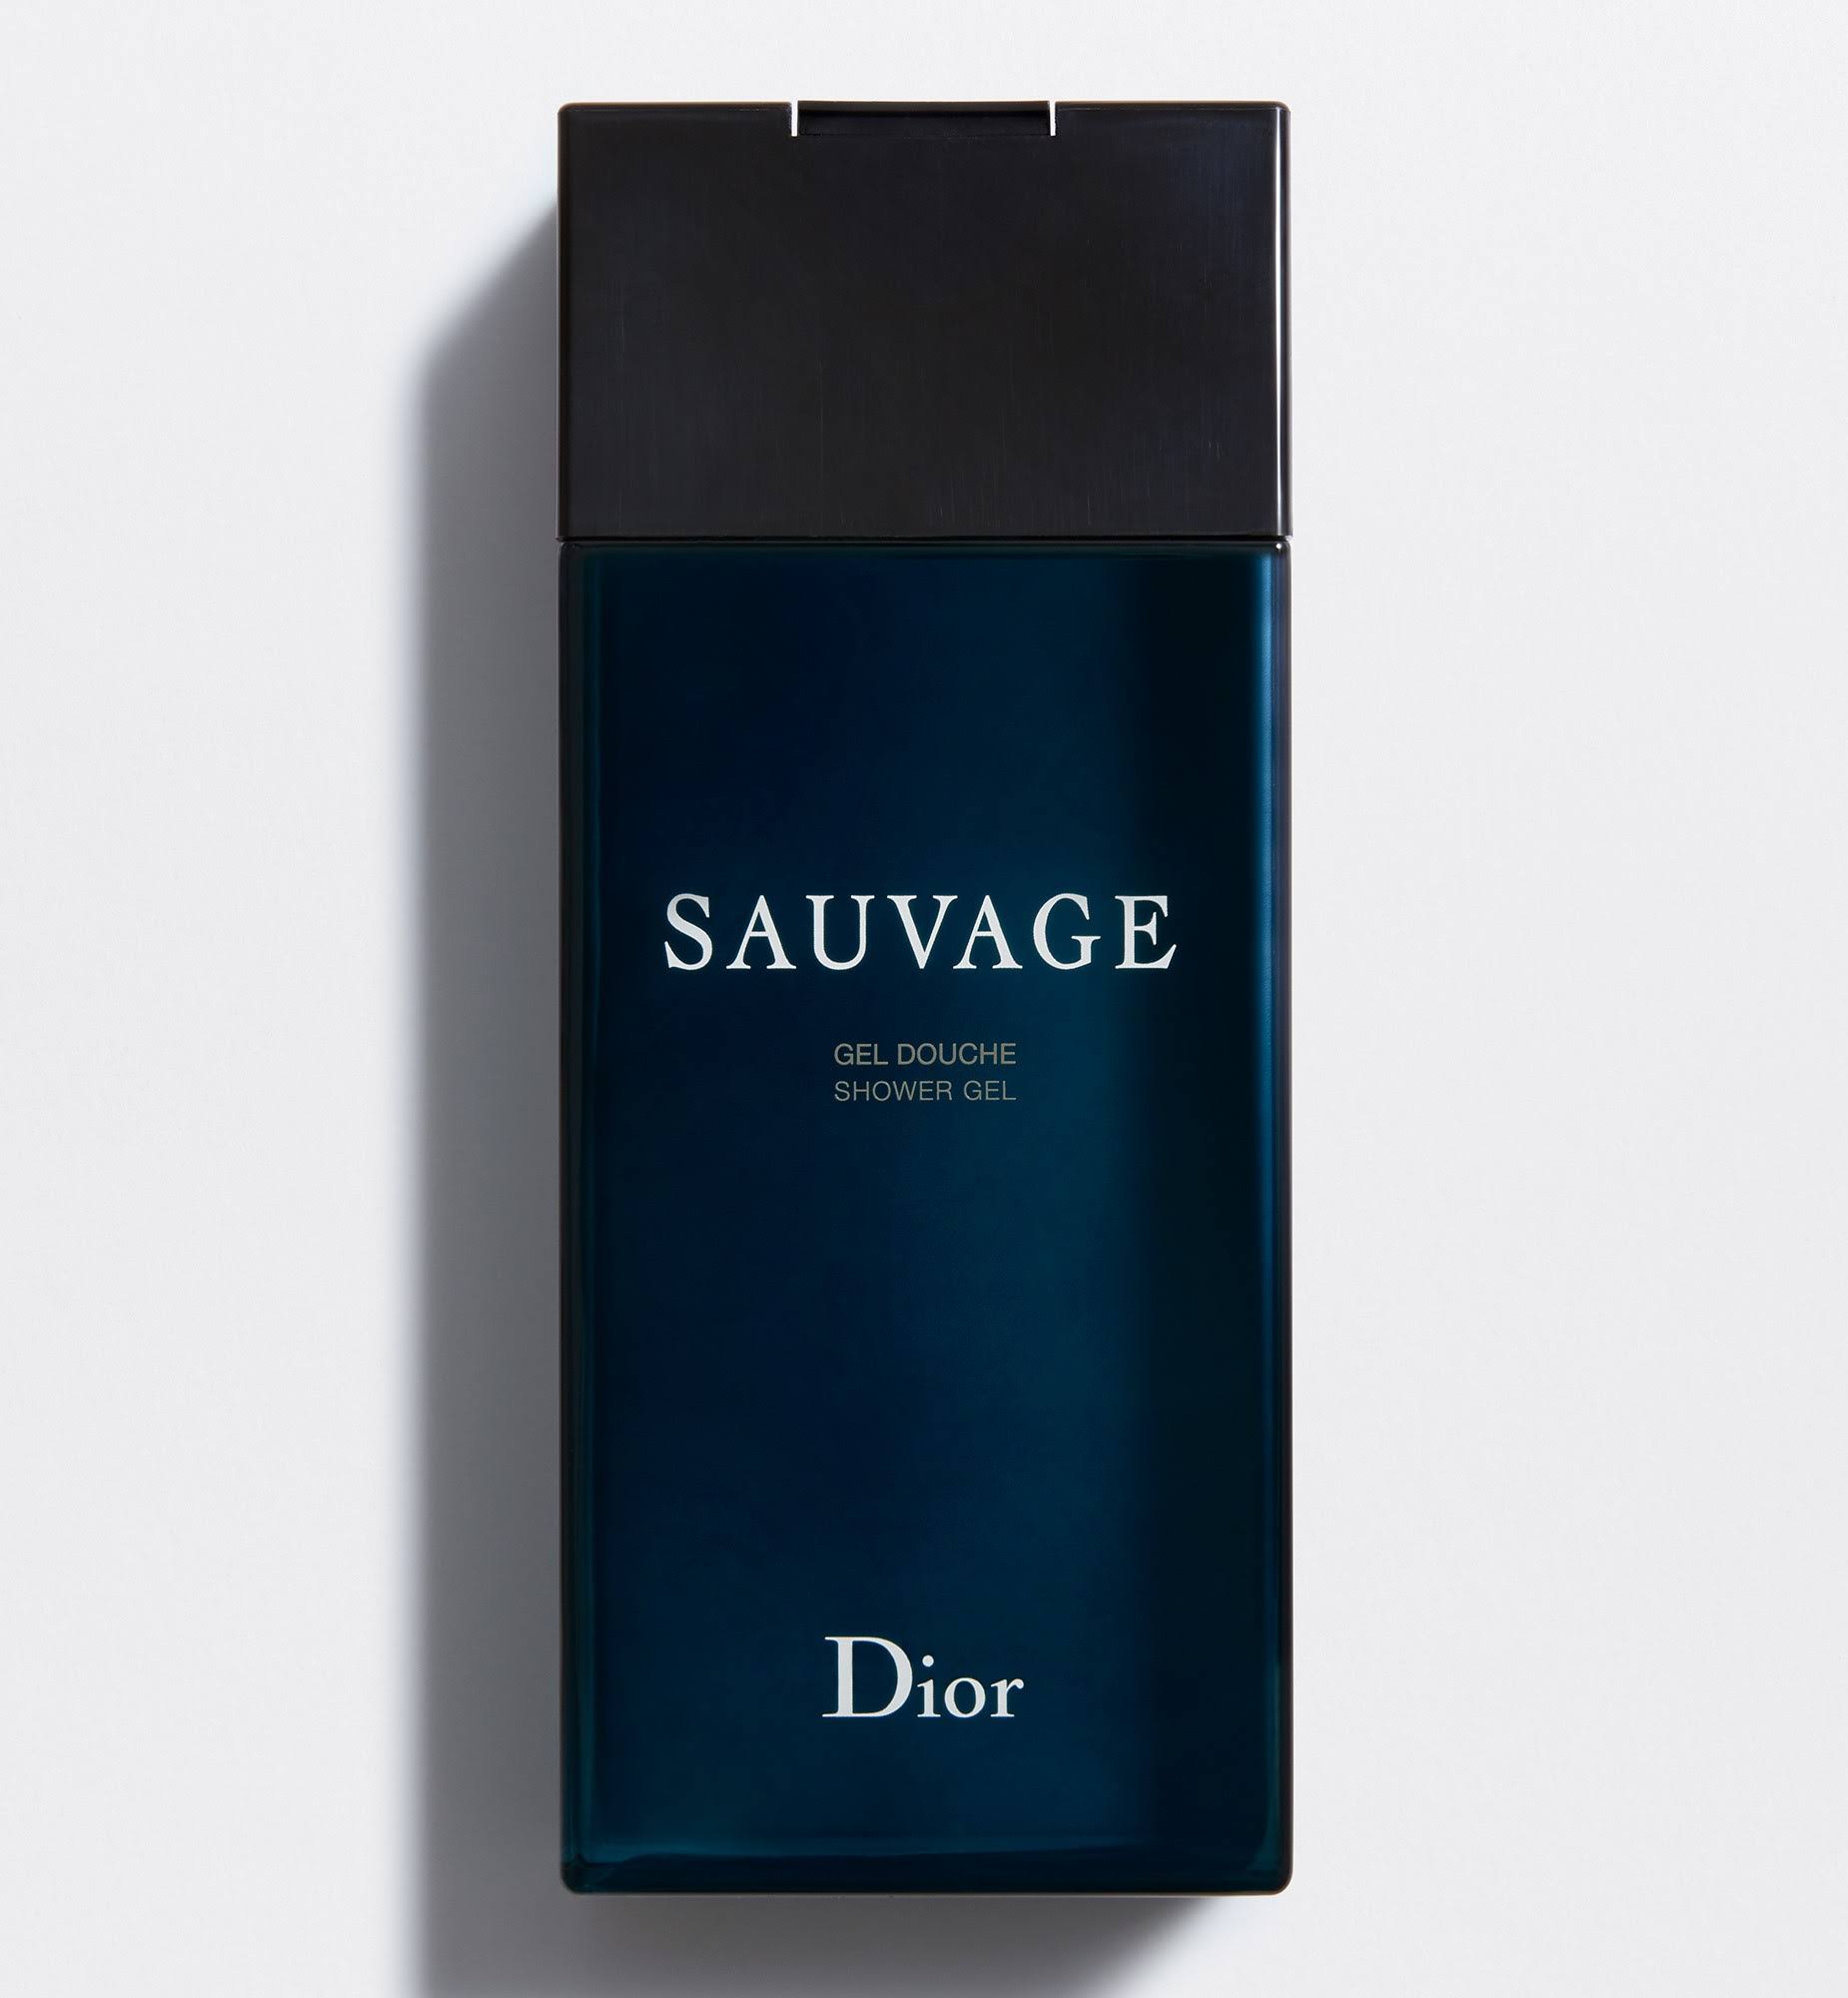 Dior Sauvage Shower Gel 200 ml